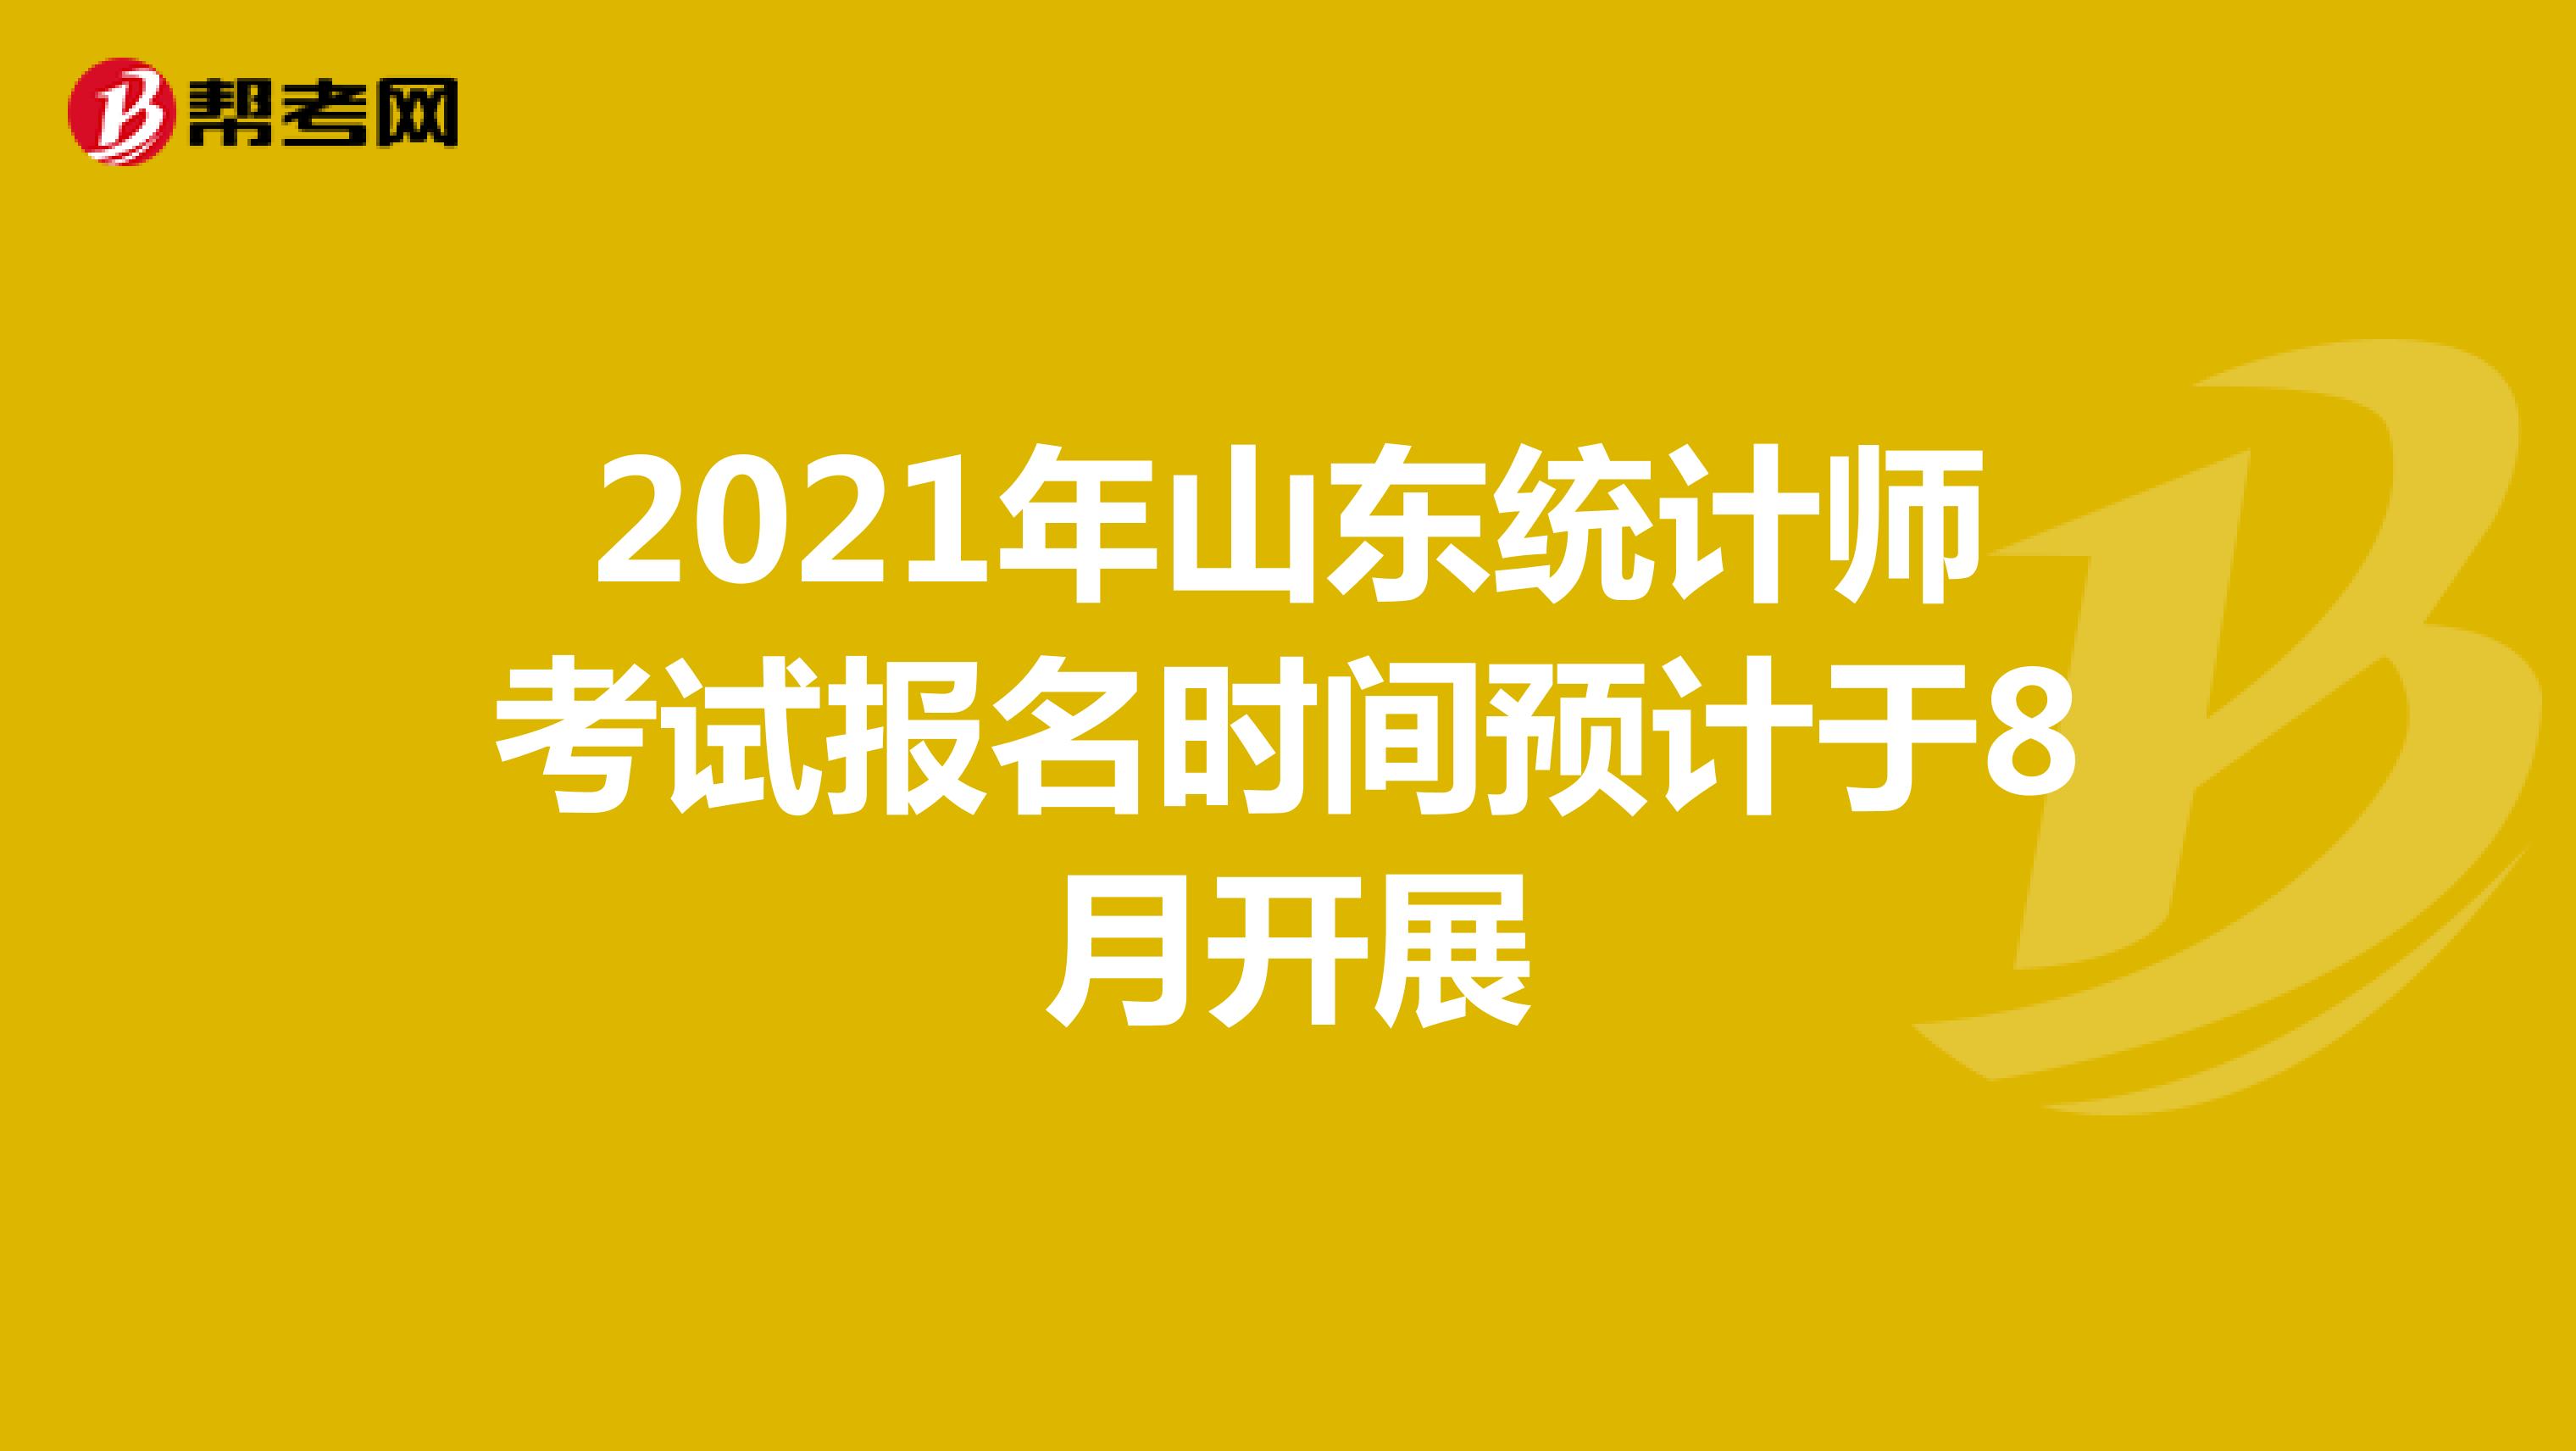 2021年山东统计师考试报名时间预计于8月开展